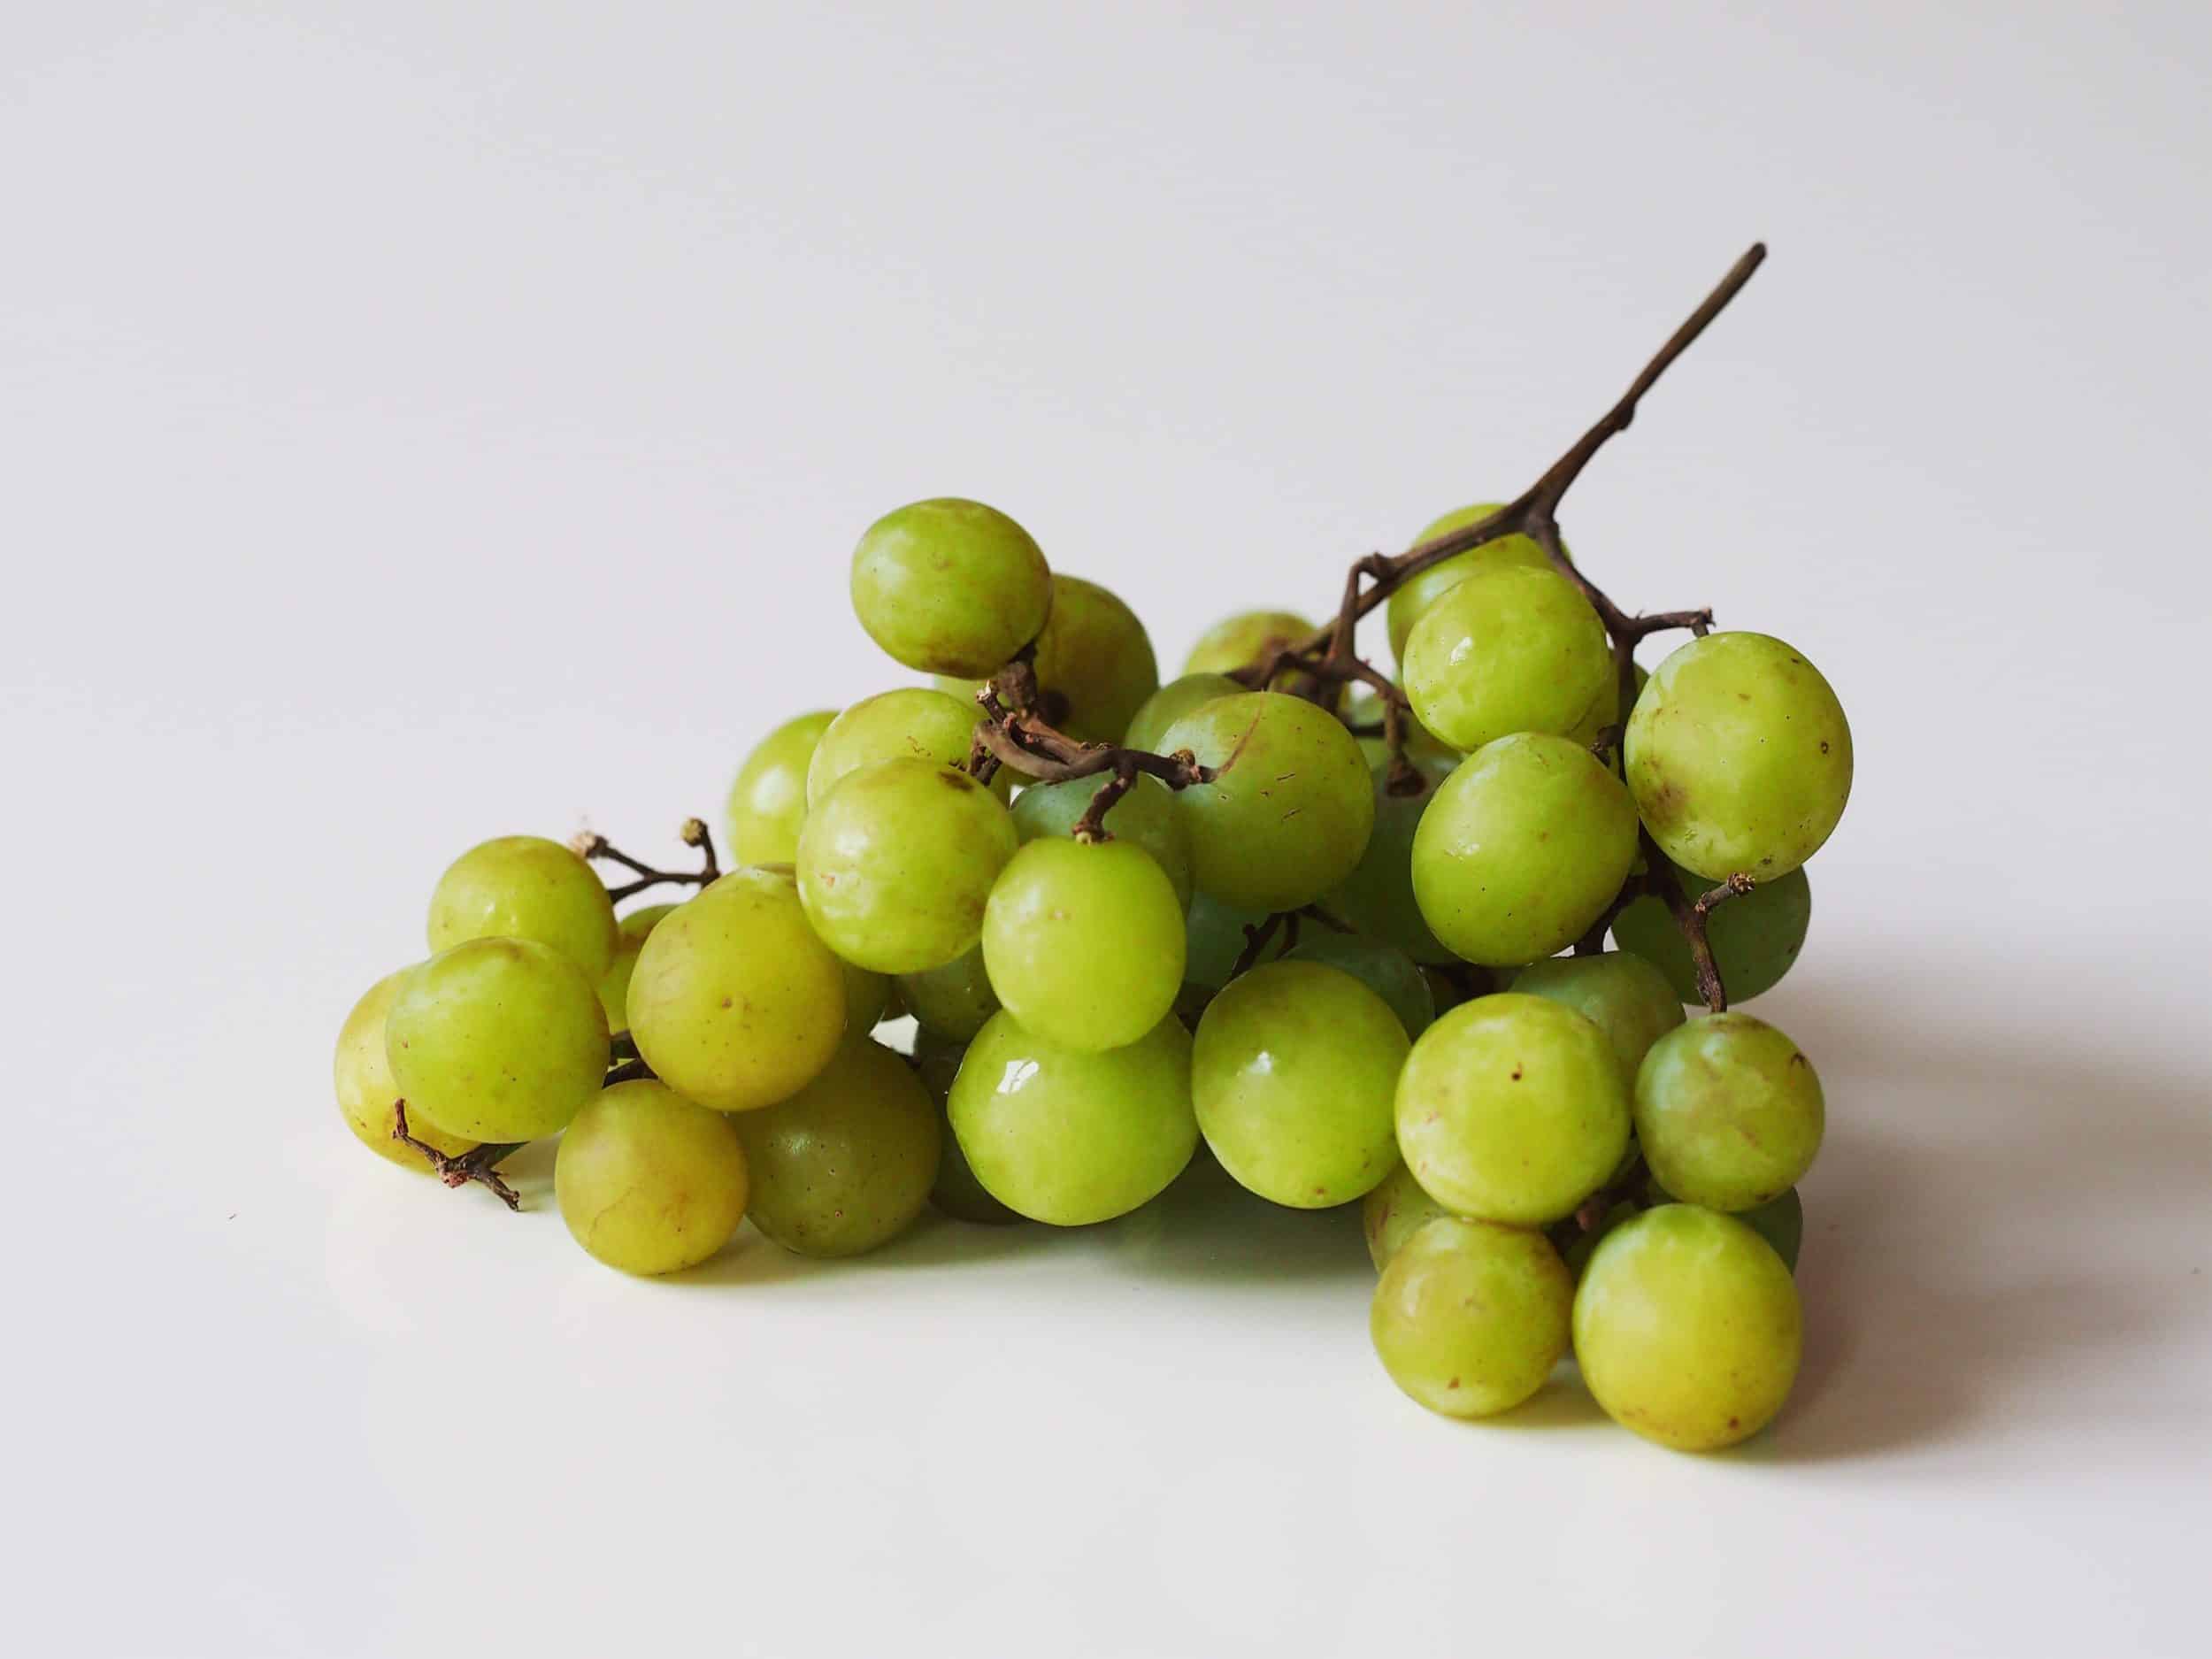 Grape Cutter Multi Purpose Safe Practical Small Fruit Quarter Cutter For MU